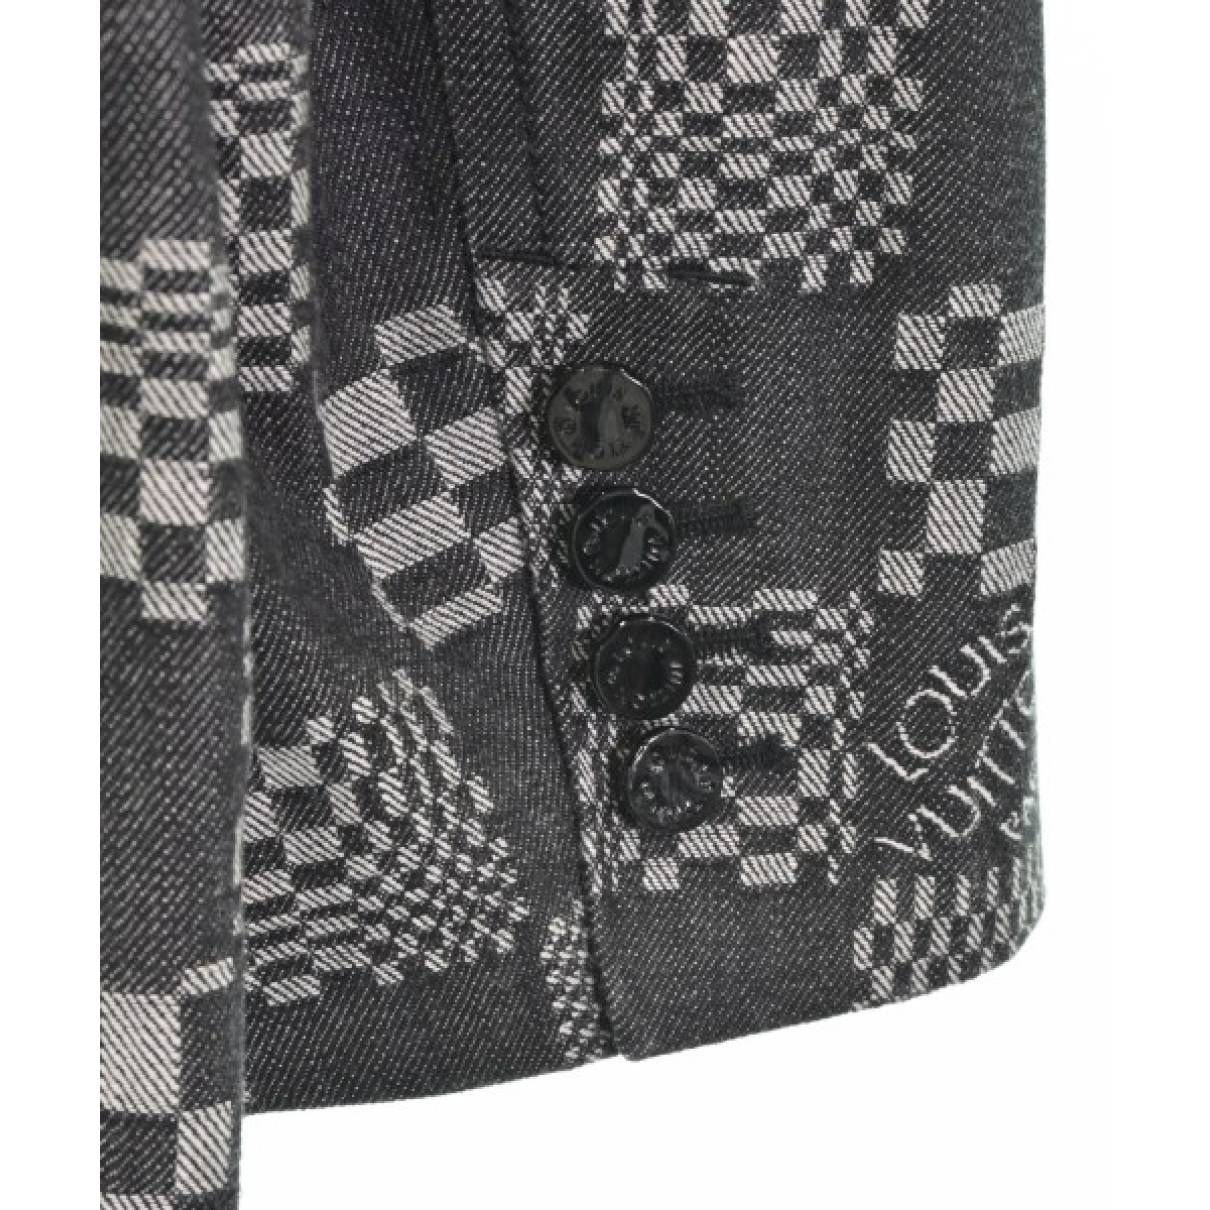 Louis Vuitton - Authenticated Jacket - Denim - Jeans Black Plain for Men, Good Condition